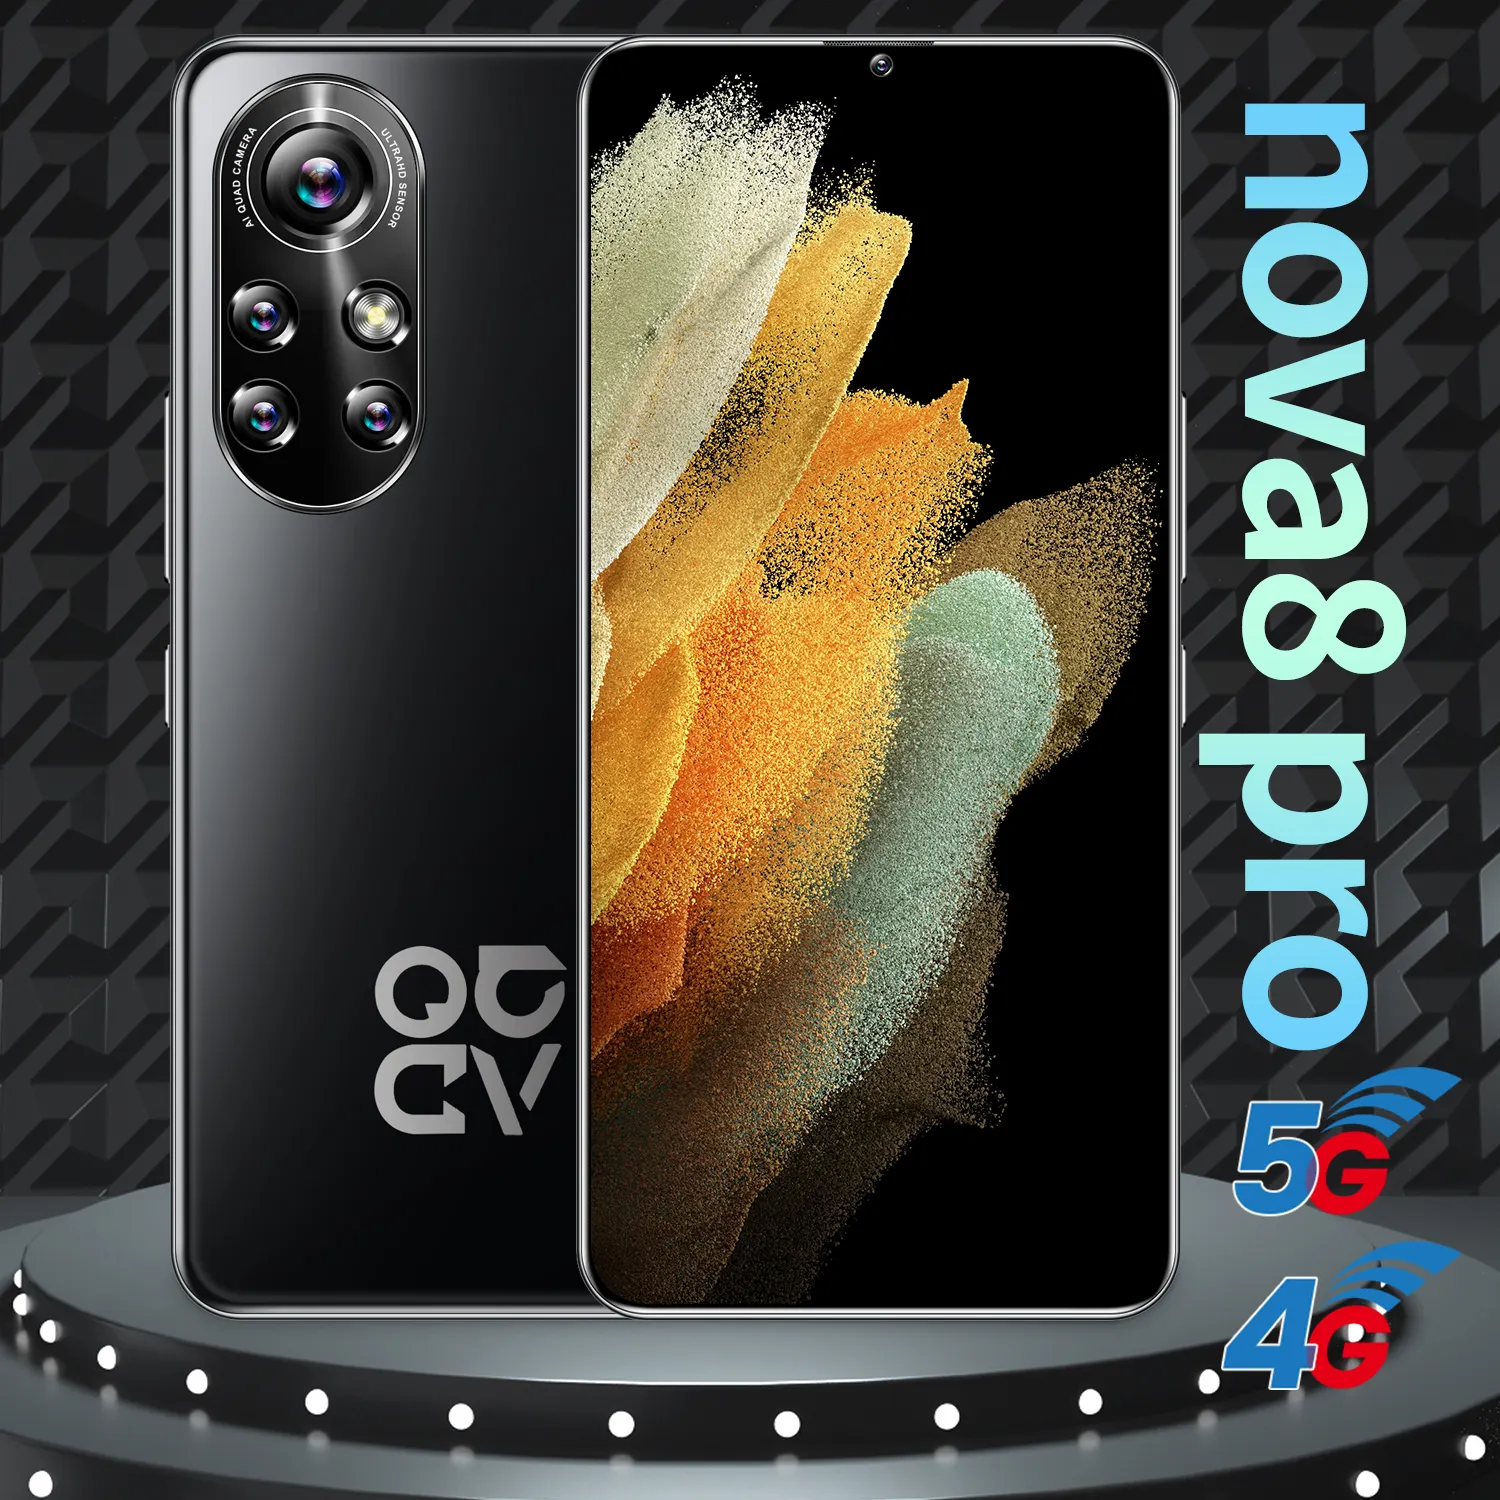 Smartphone nova8 pro dual sim com tela, telefone celular, baixo preço, 6.8, fhd +, desbloqueio por standby, quad core, android